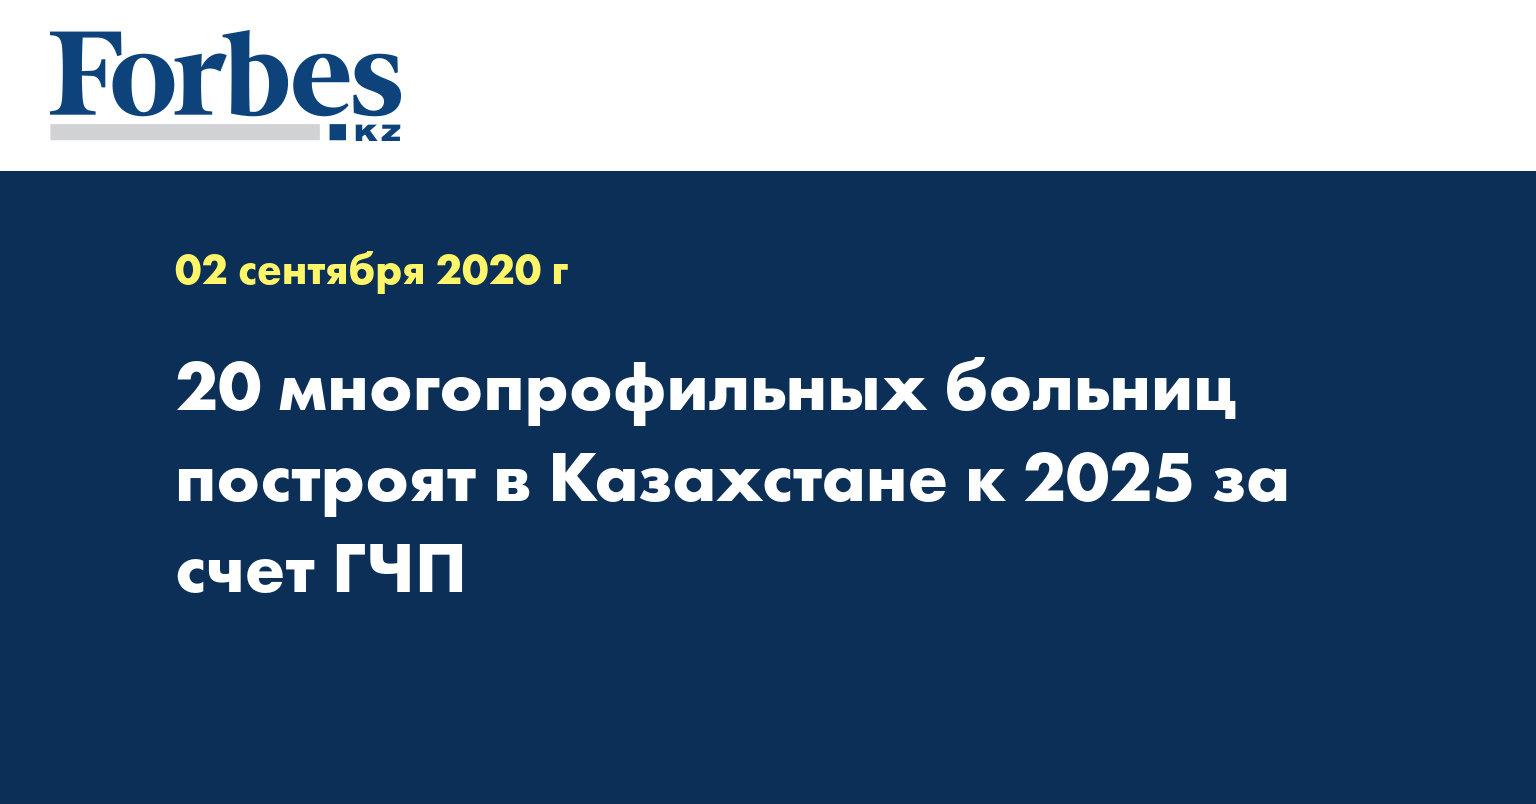  20 многопрофильных больниц построят в Казахстане к 2025 за счет ГЧП